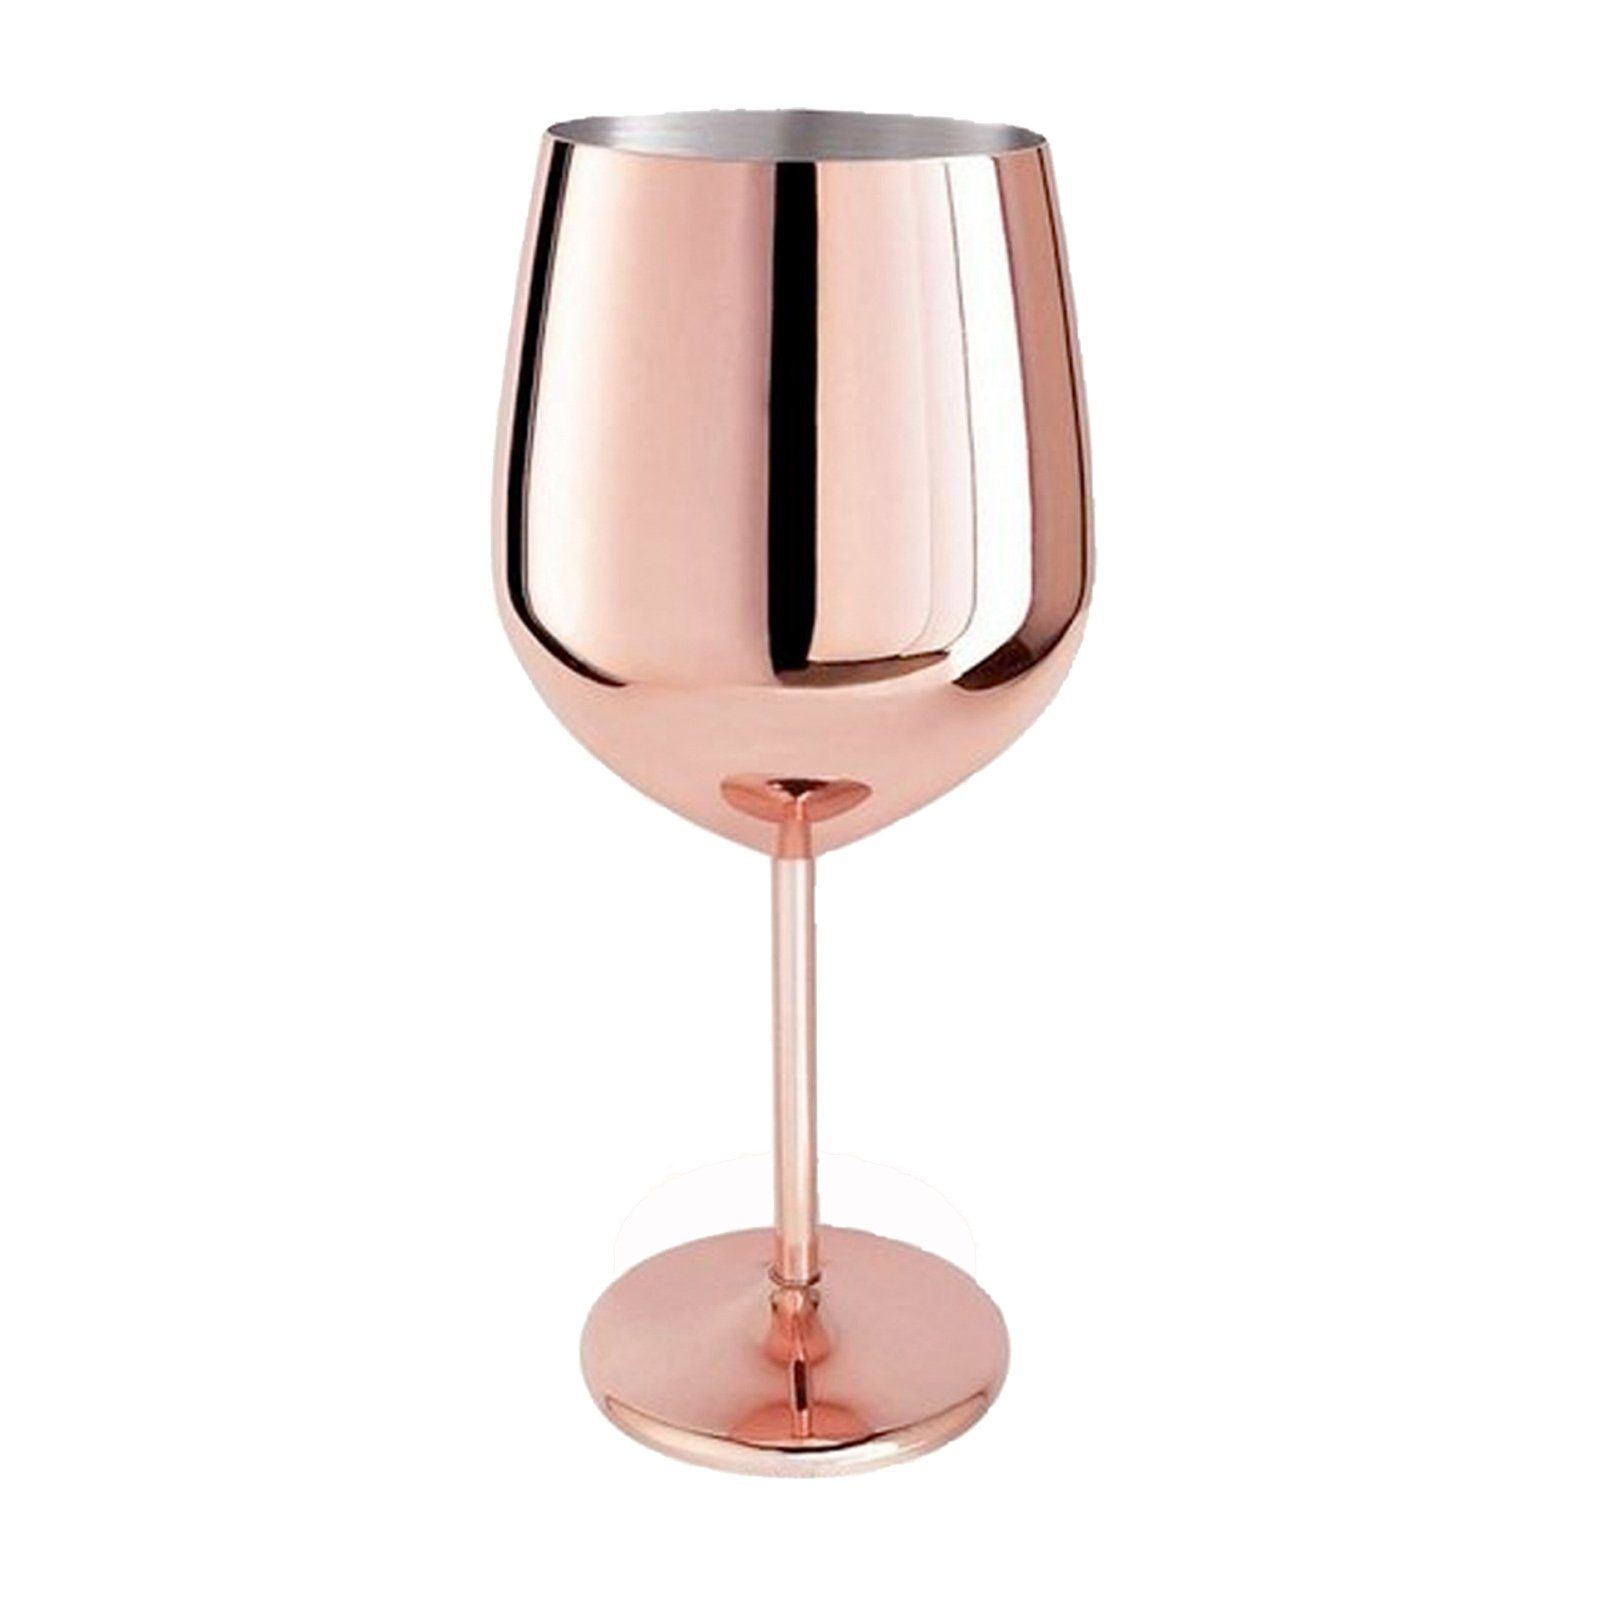 HAC24 Weinglas Weinbecher Weinkelch Rotweinglas Weißweinglas, Edelstahl, Kupferfarben 400 ml